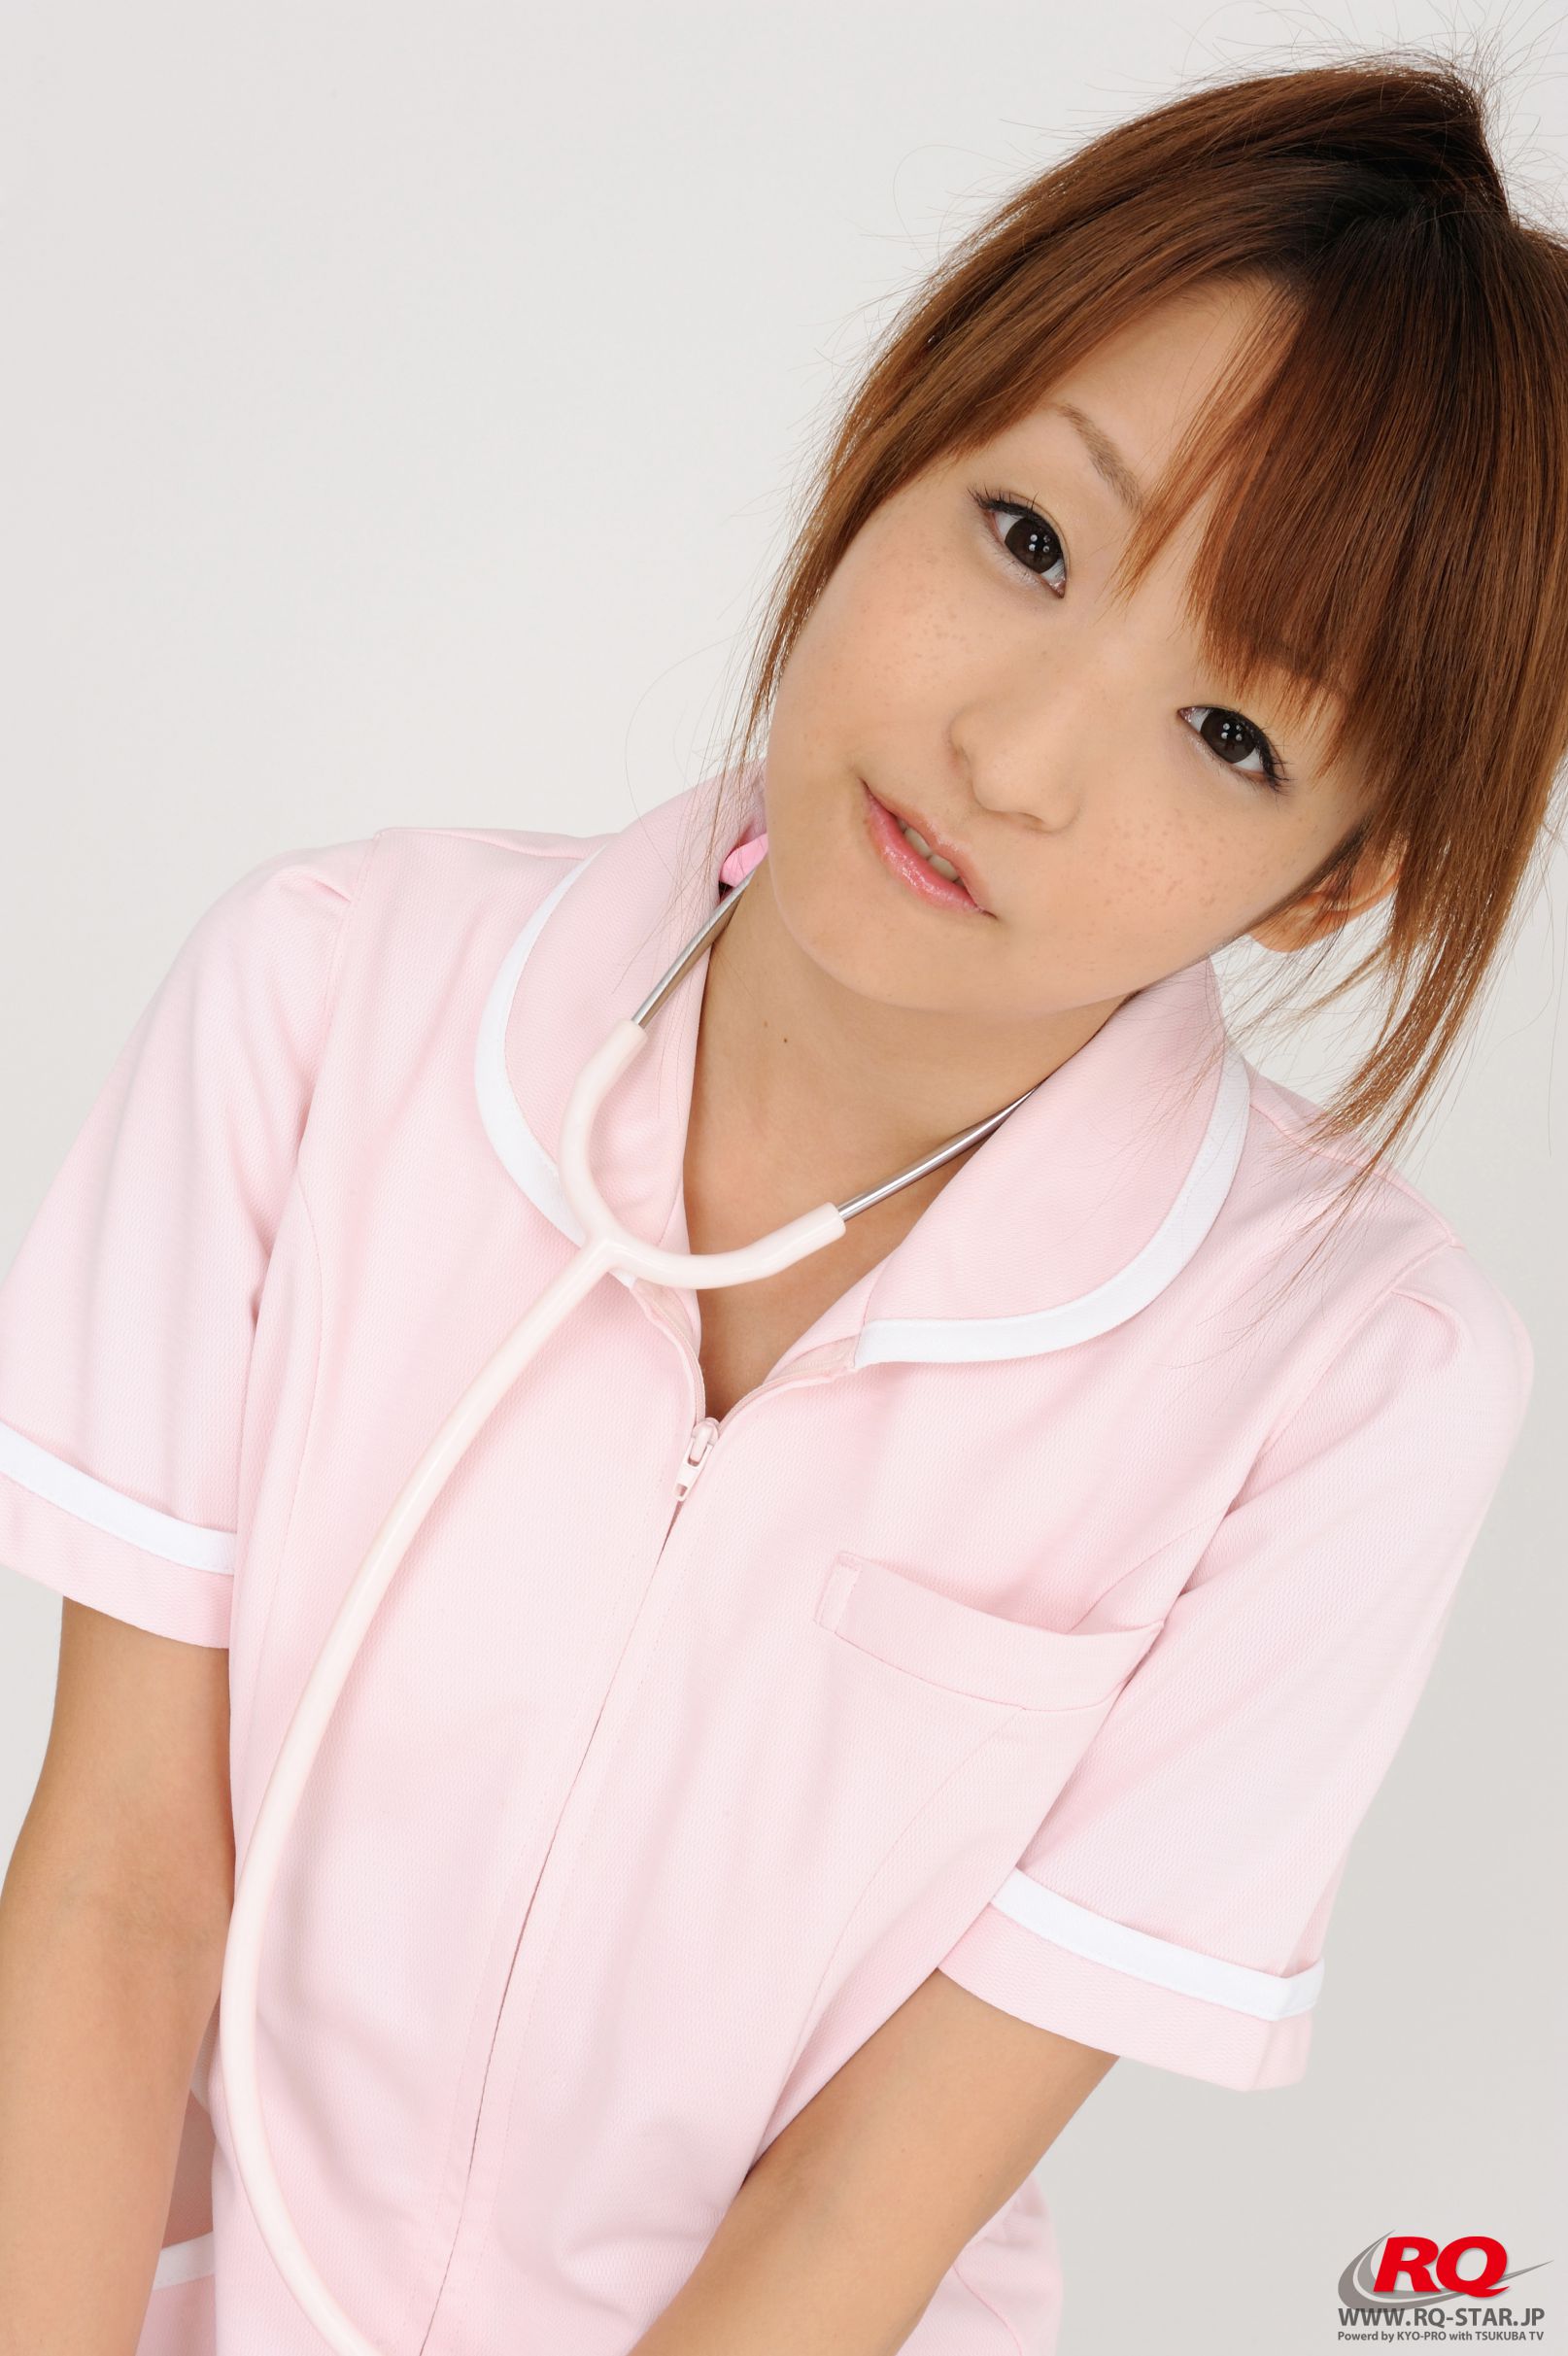 [RQ-STAR] NO.00083 青木未央 Nurse Costume 护士服系列 